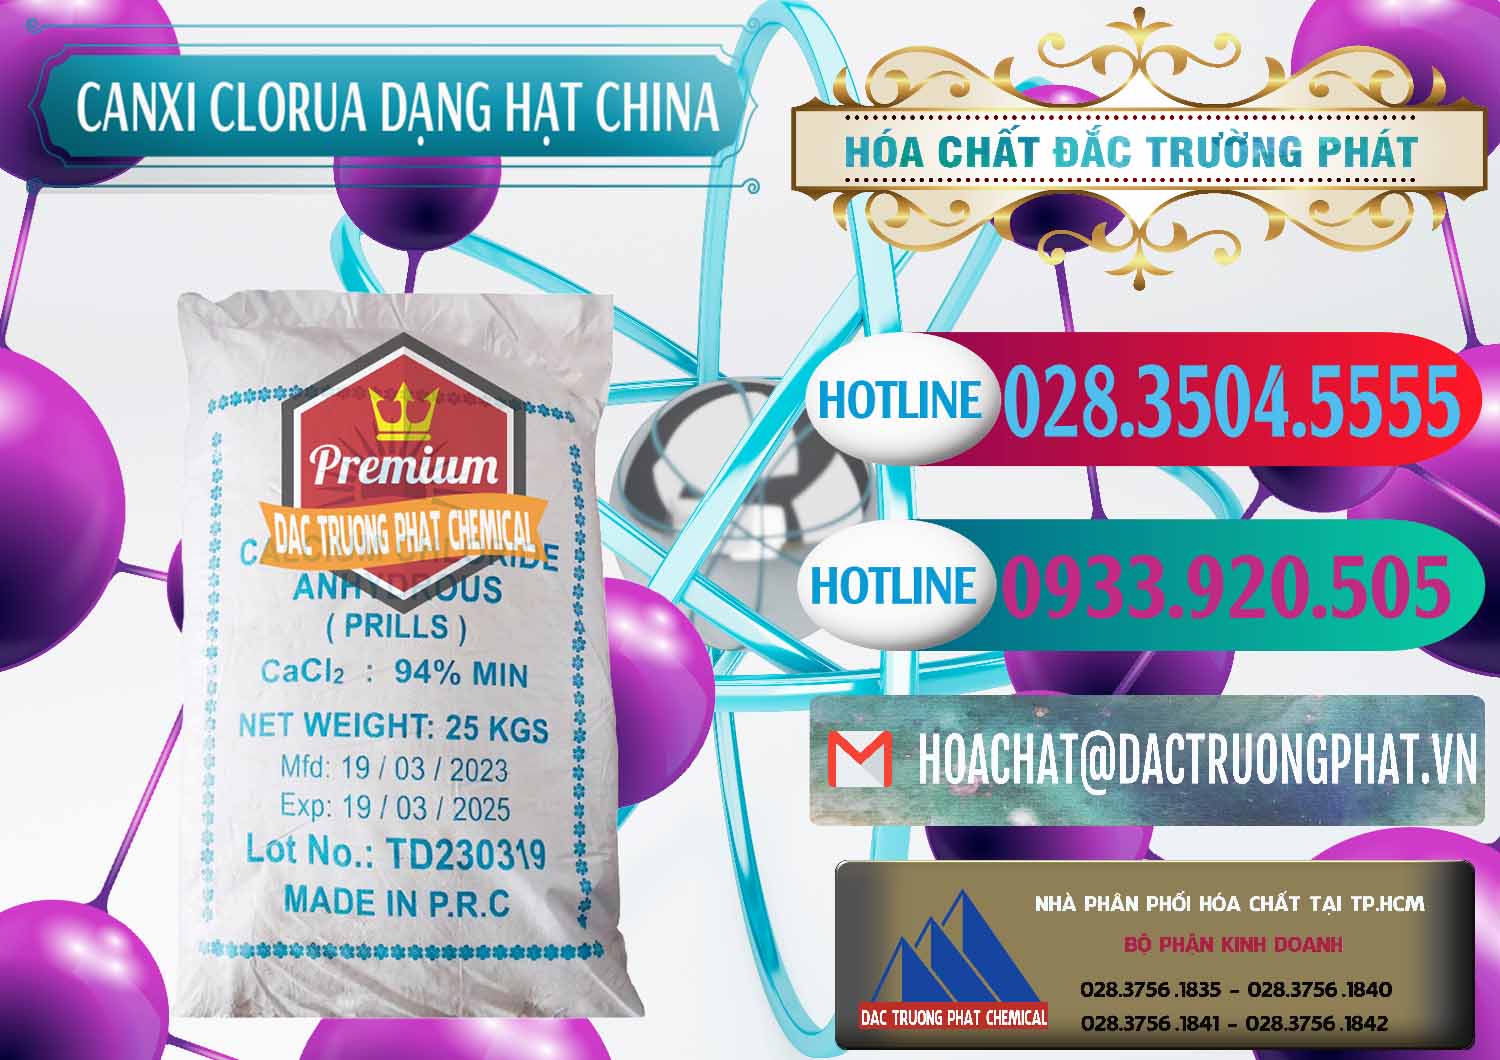 Công ty chuyên bán _ cung cấp CaCl2 – Canxi Clorua 94% Dạng Hạt Trung Quốc China - 0373 - Công ty chuyên kinh doanh - cung cấp hóa chất tại TP.HCM - truongphat.vn